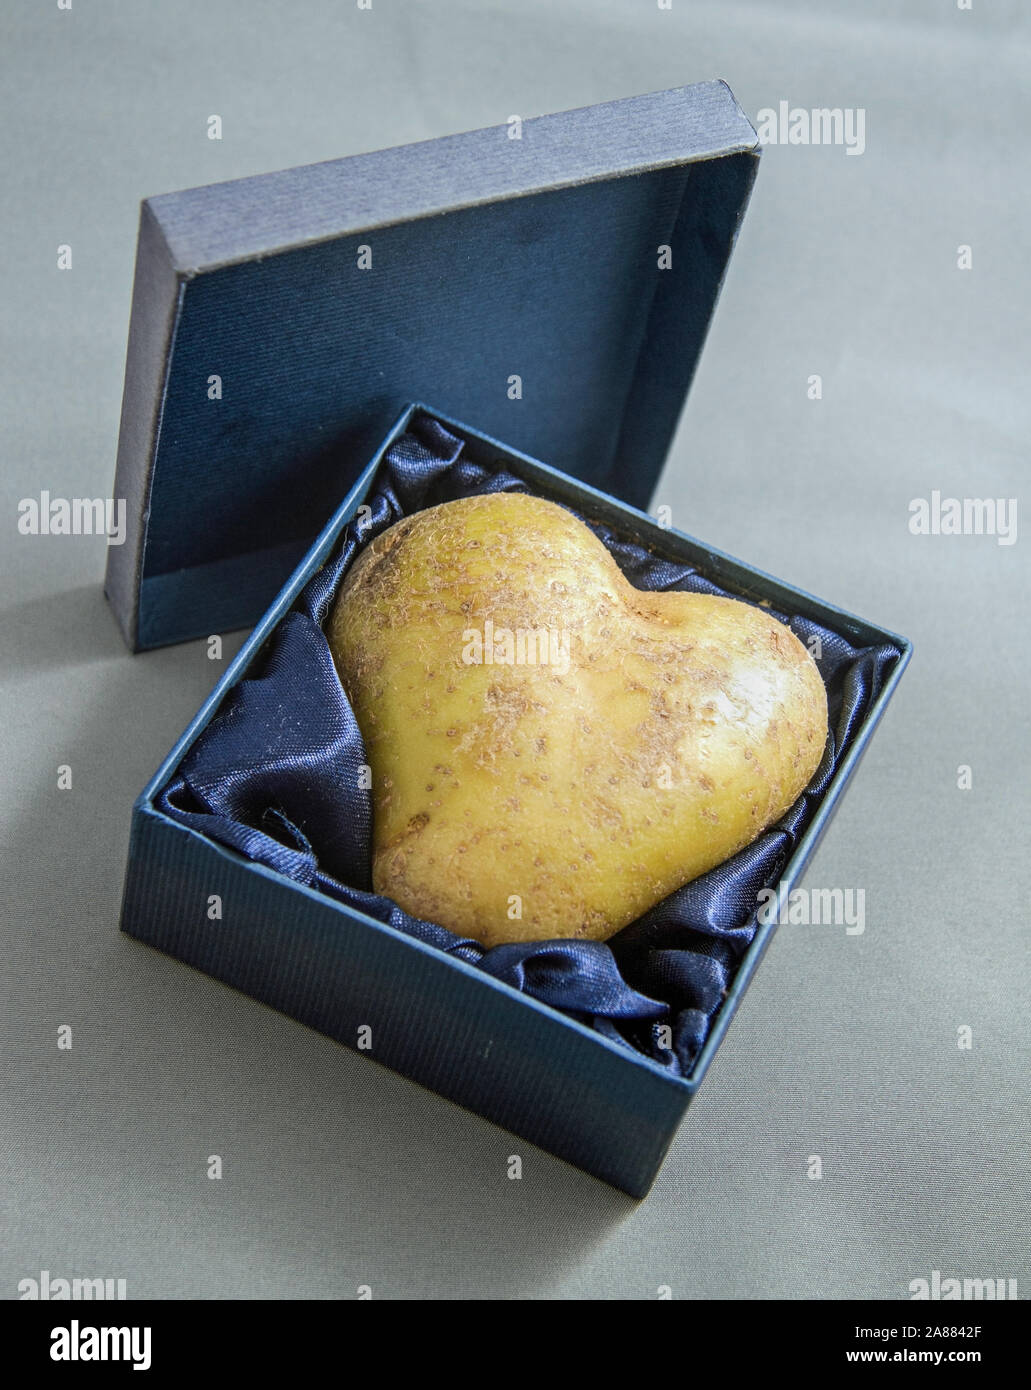 Une pomme de terre en forme de coeur dans une boîte-cadeau. Pomme de terre  de l'amour Photo Stock - Alamy